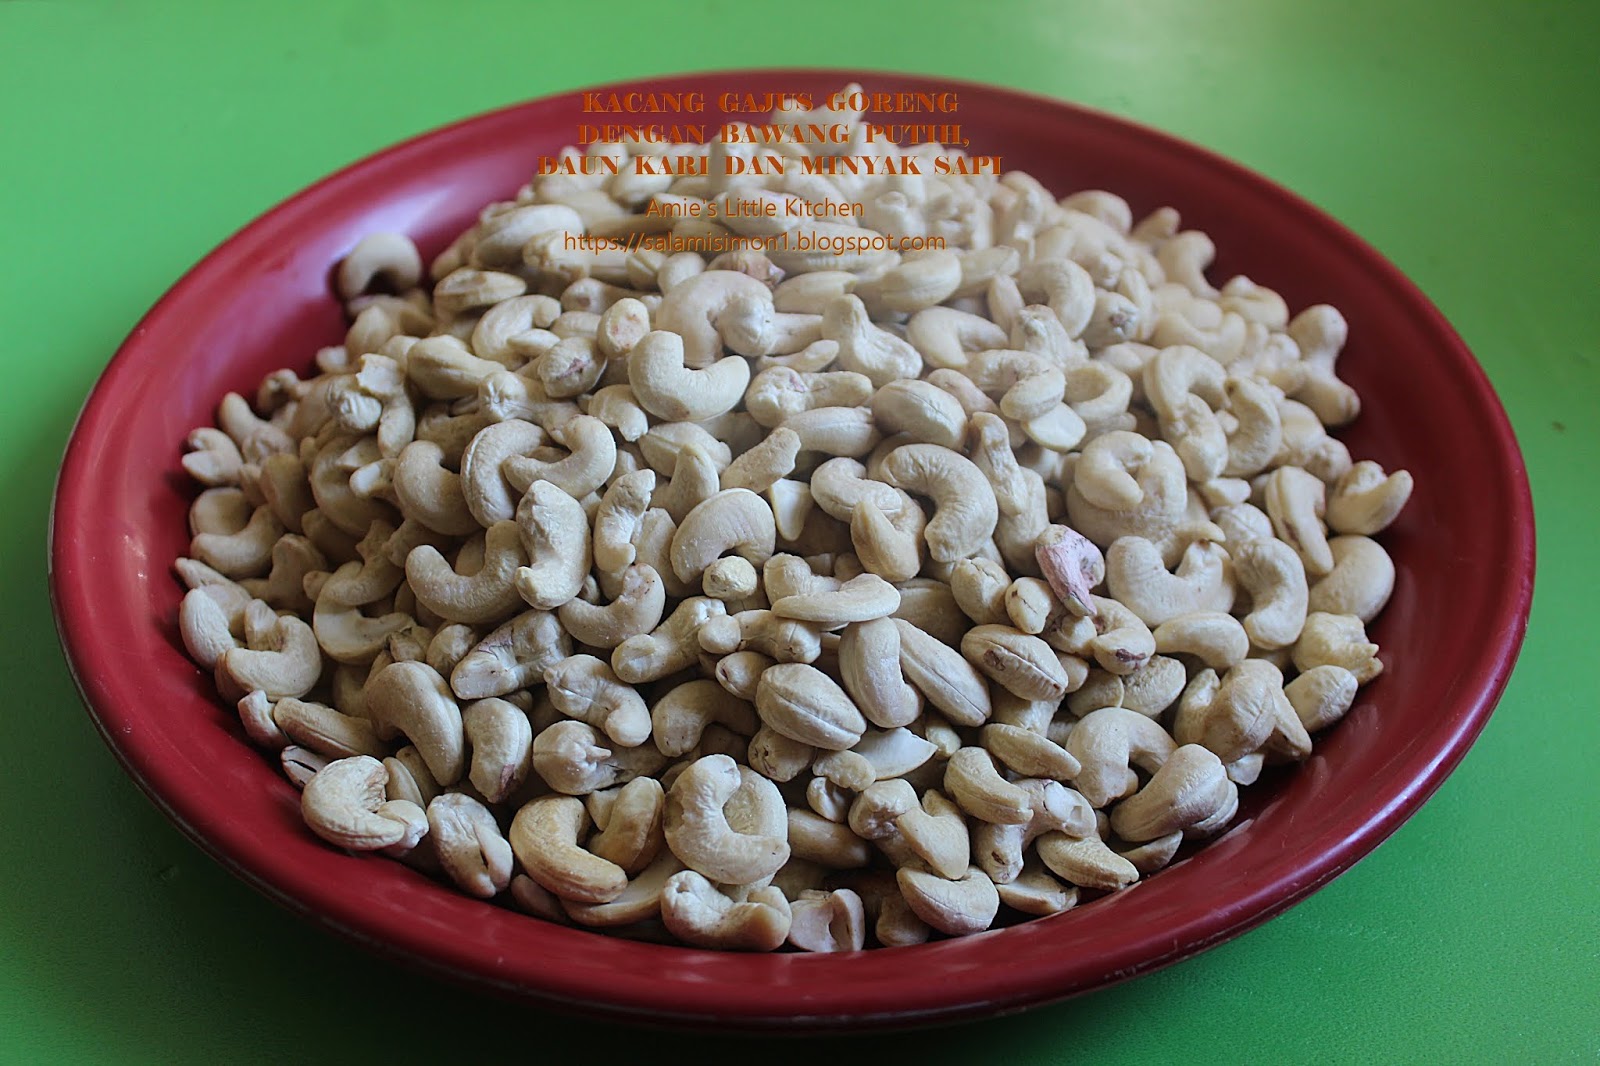 Resipi Kacang Gajus Goreng dengan Bawang Putih, Daun Kari dan Minyak